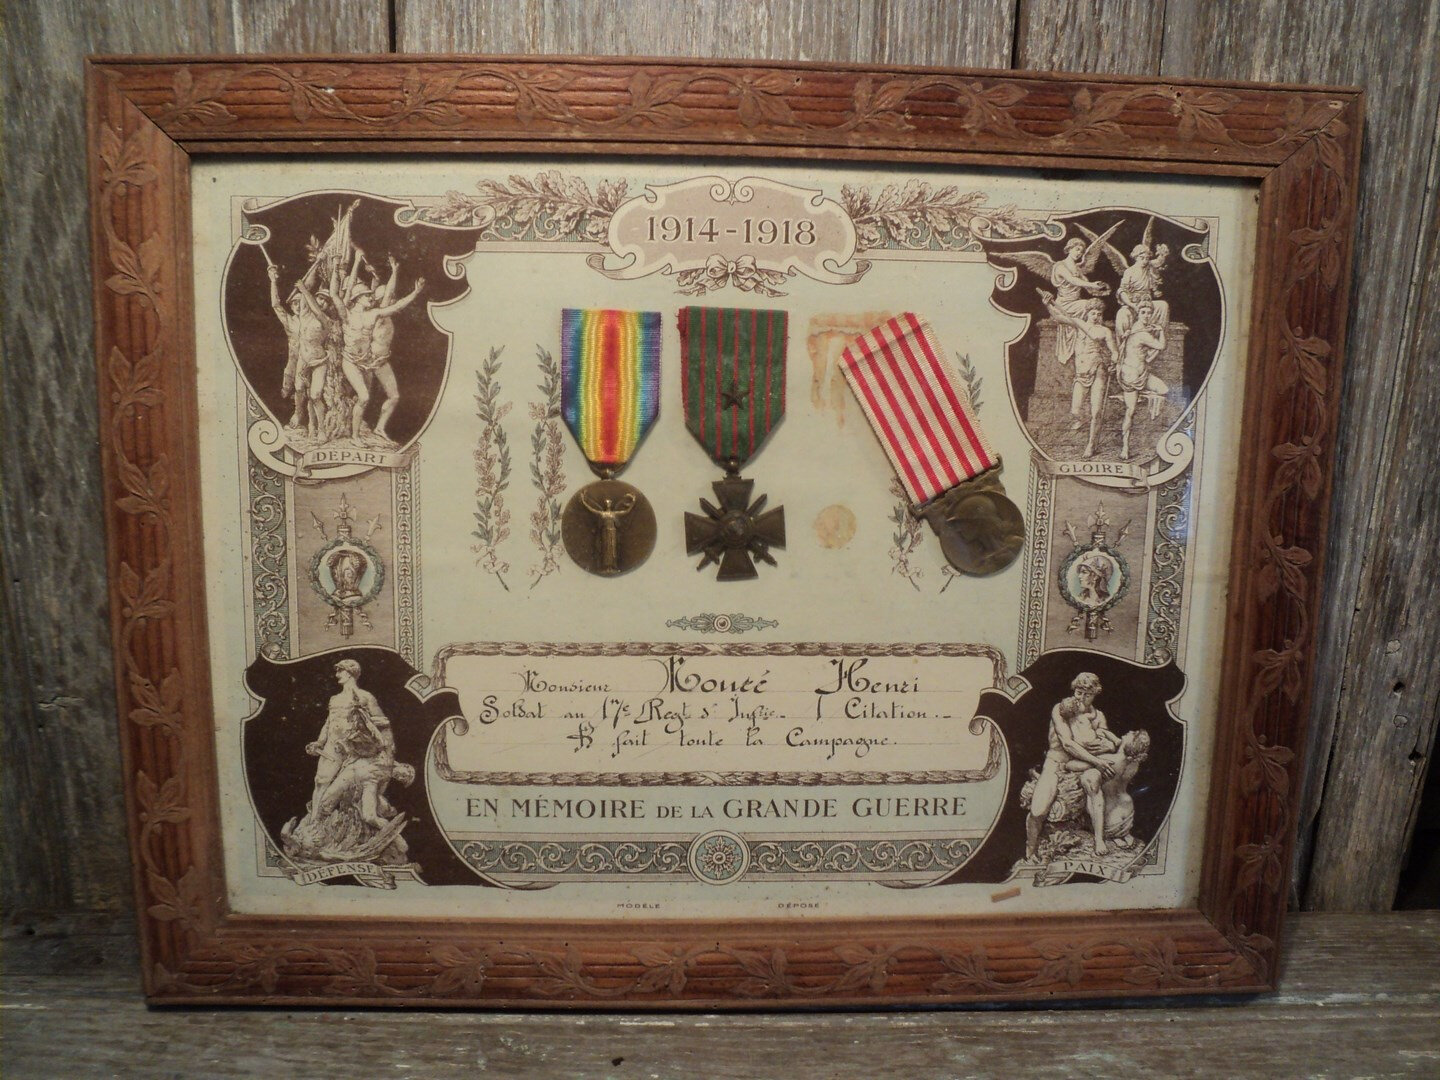 Cadre daffichage de médaille de guerre pour WW1 WW2 militaire WW2 médaille  de guerre mondiale, 6 choix de cadre avec support noir pour 5 médailles  dans un cadre. -  France